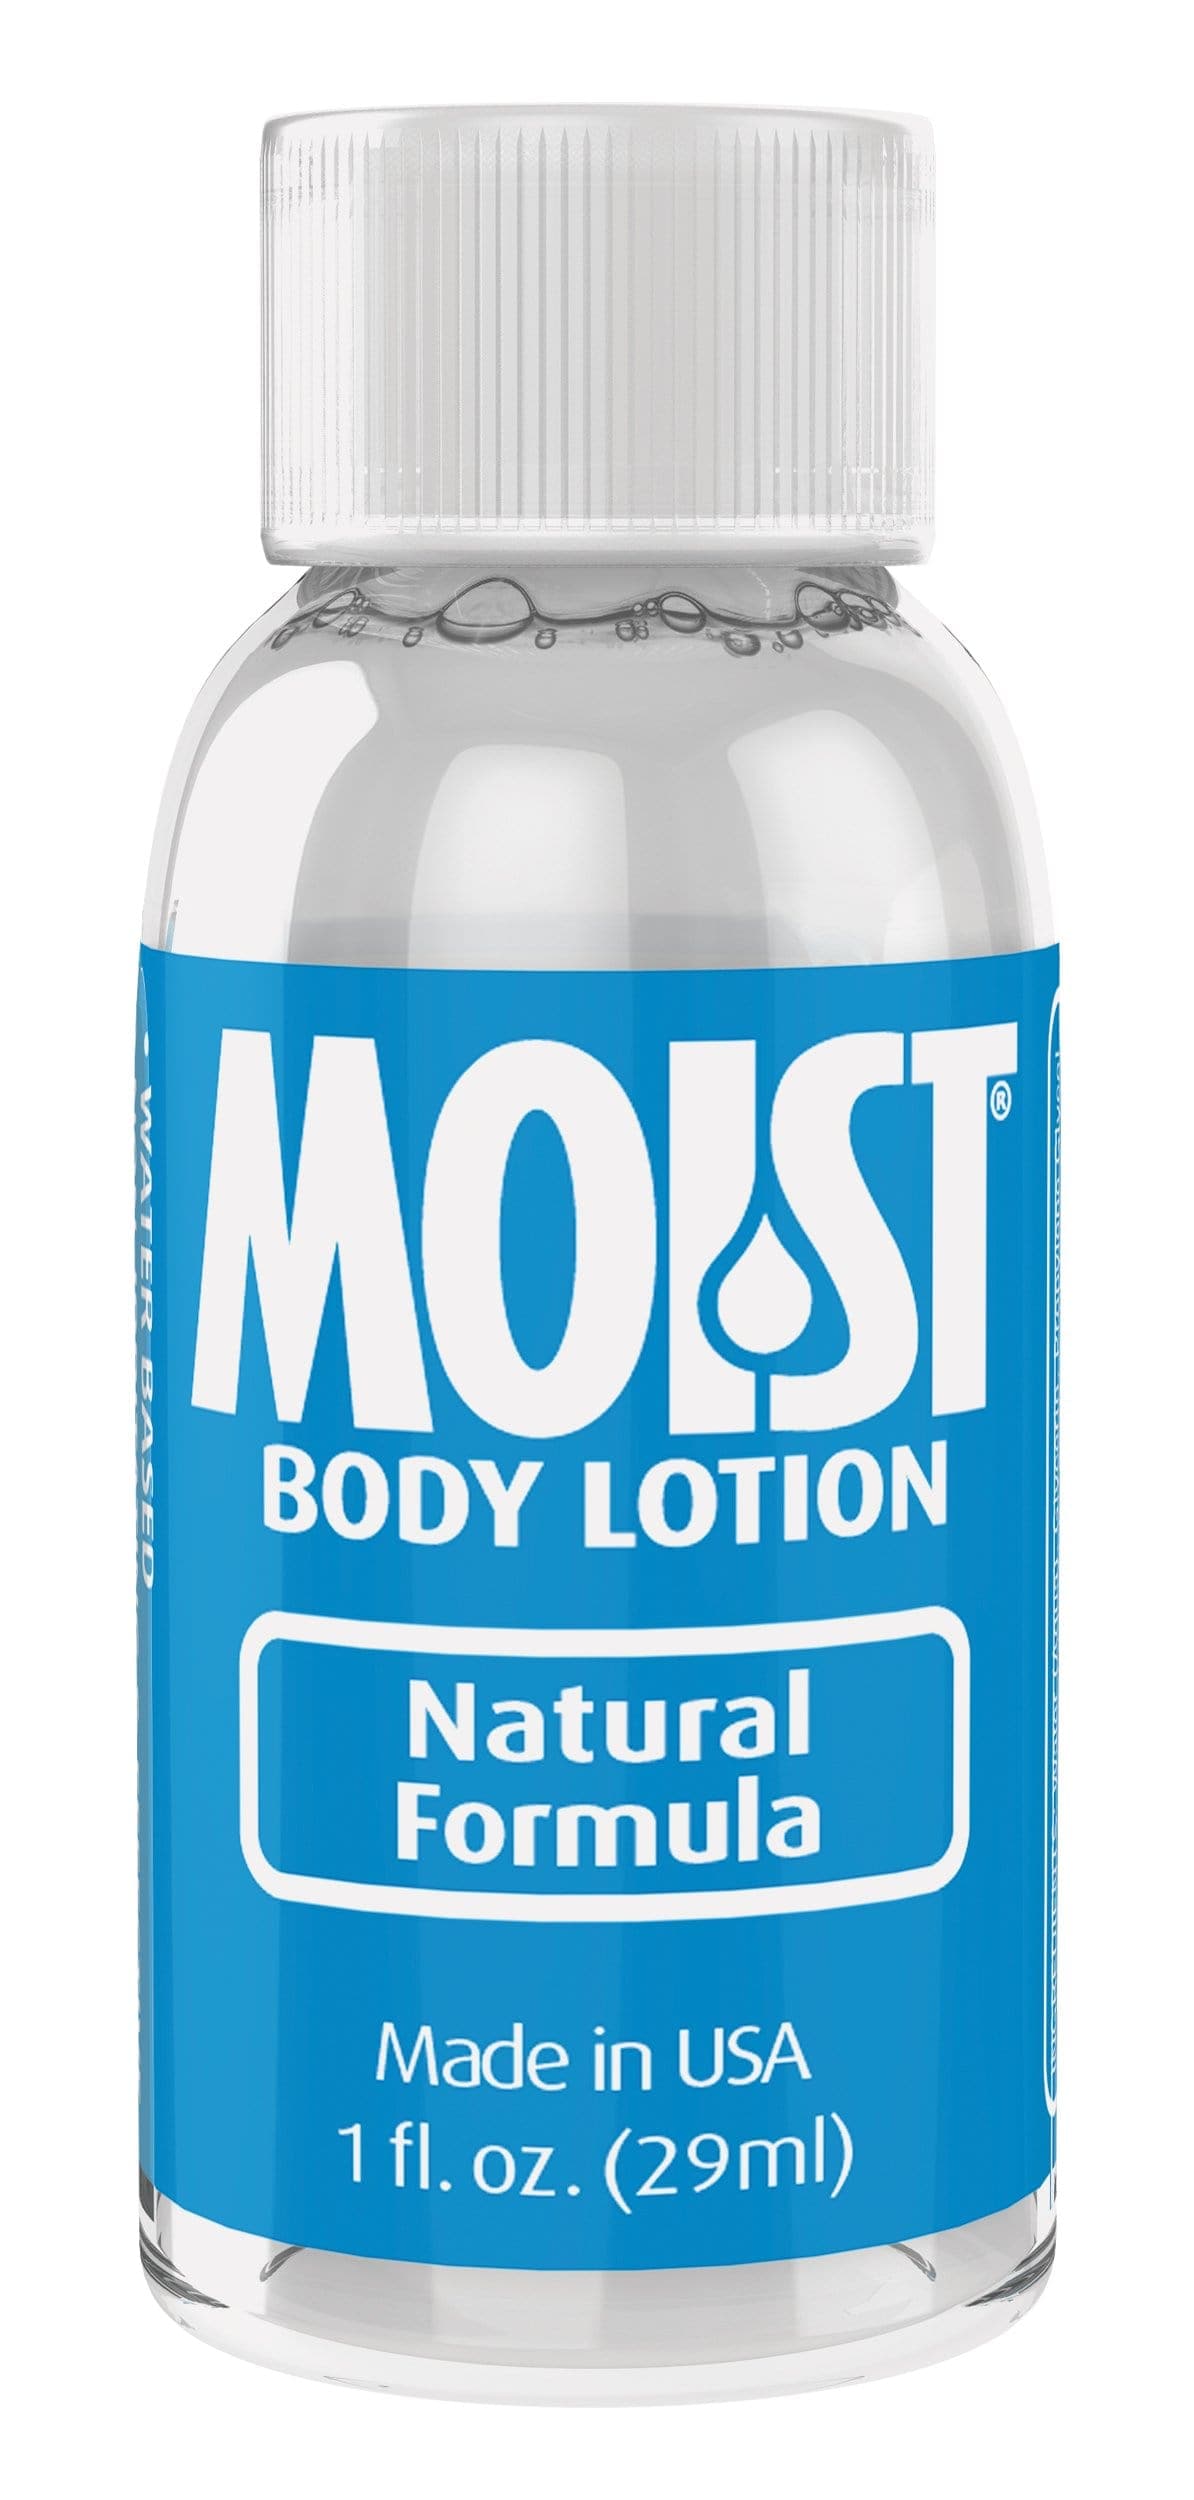 moist body lotion 1 fl oz